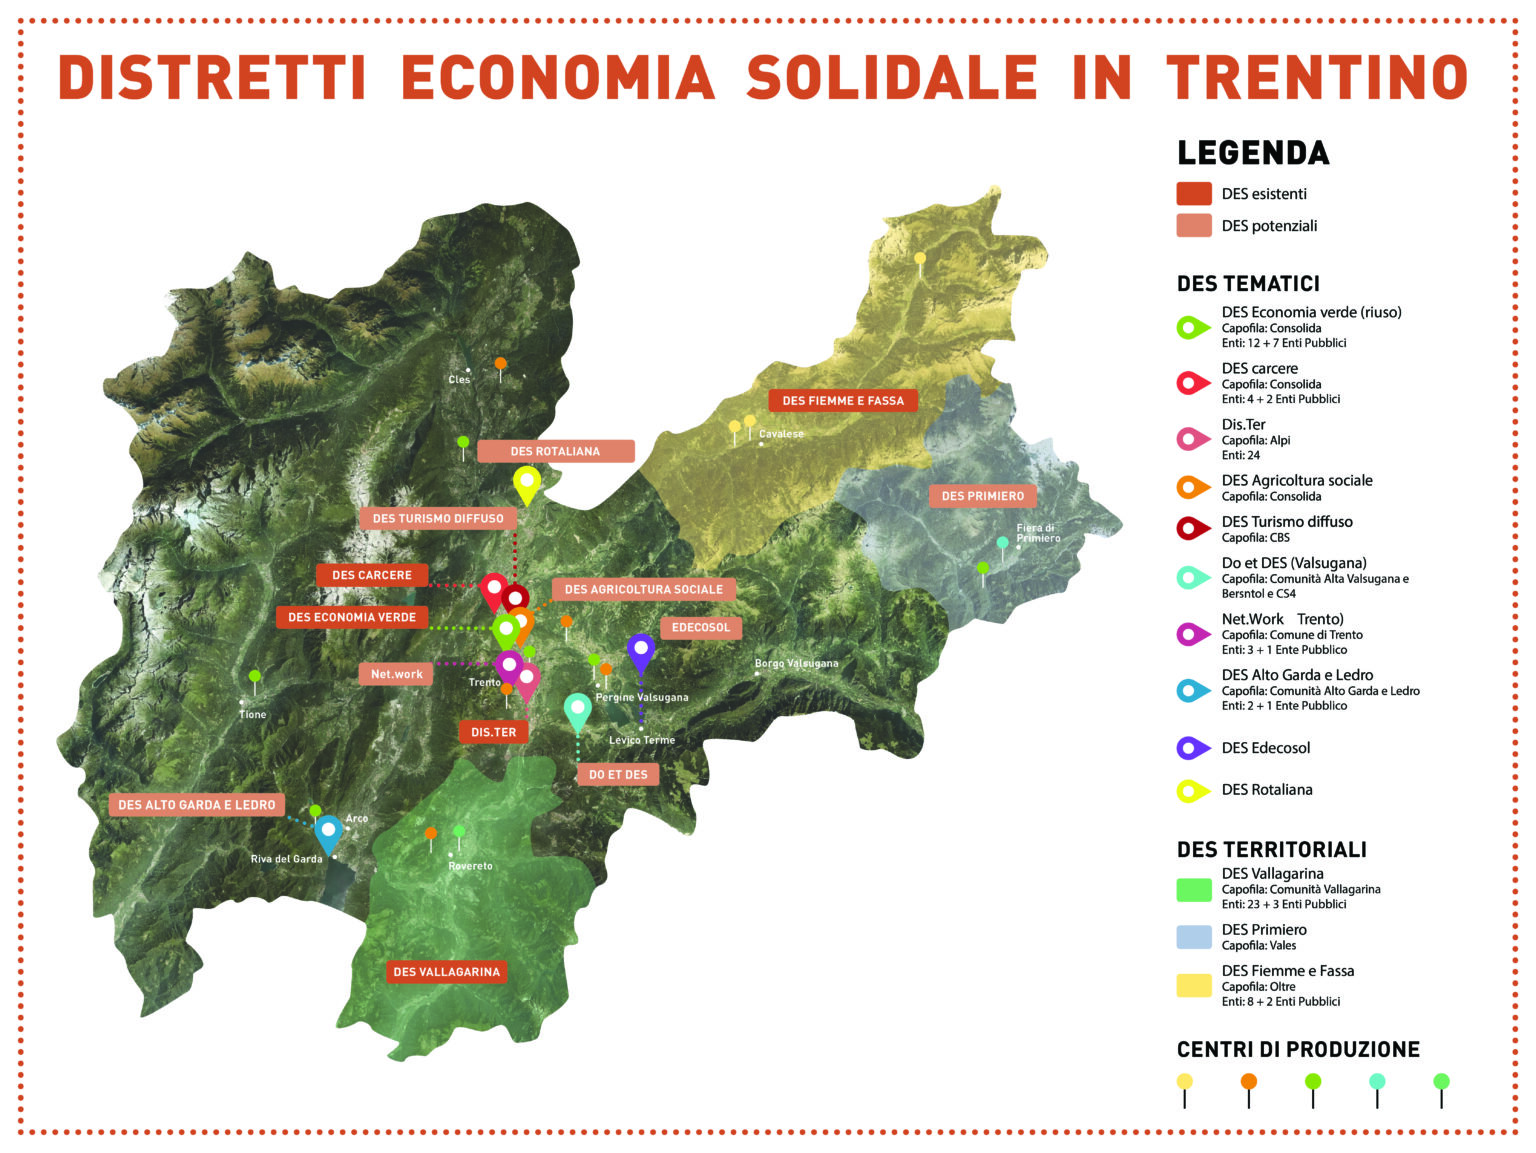 mappa dei distretti dell'economia solidale trentina